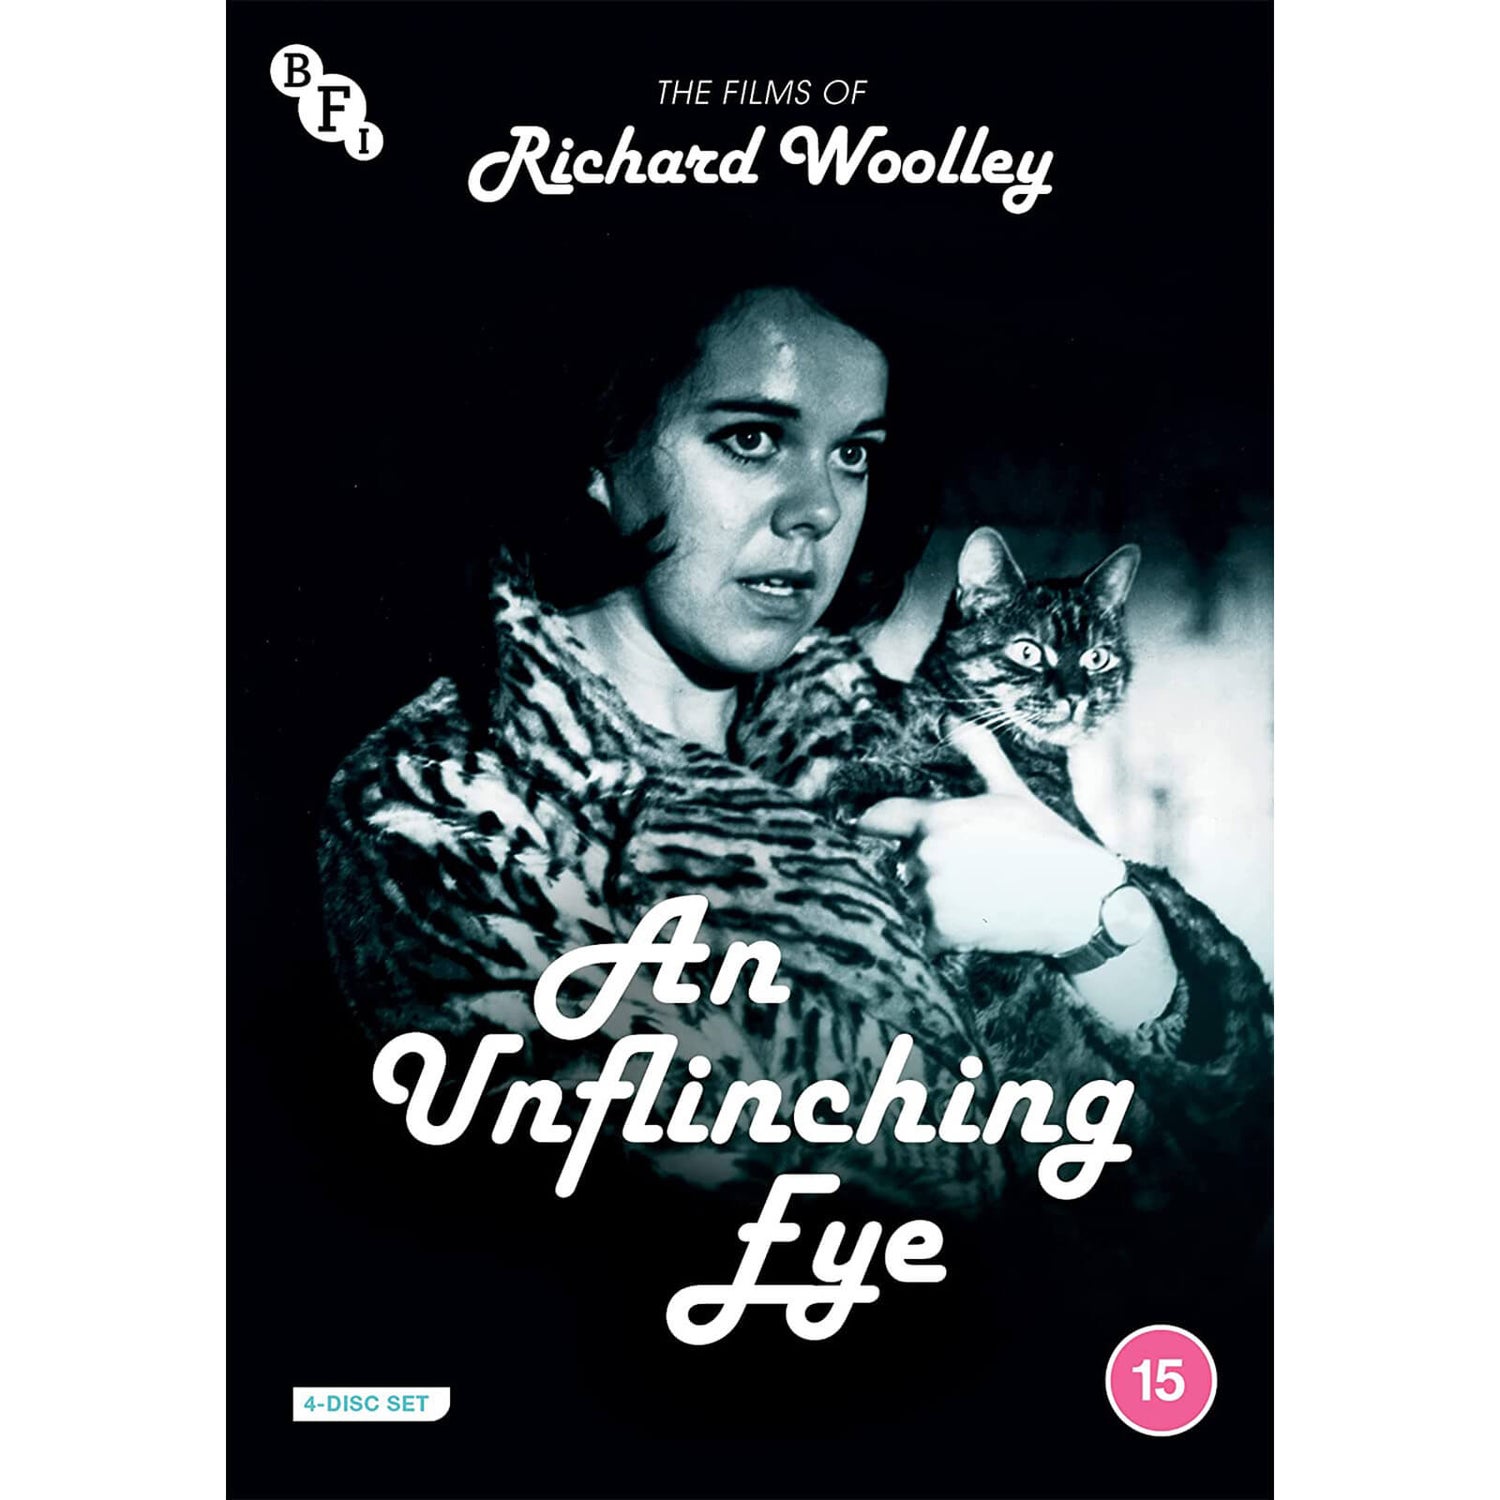 An Unflinching Eye: De Films van Richard Woolley